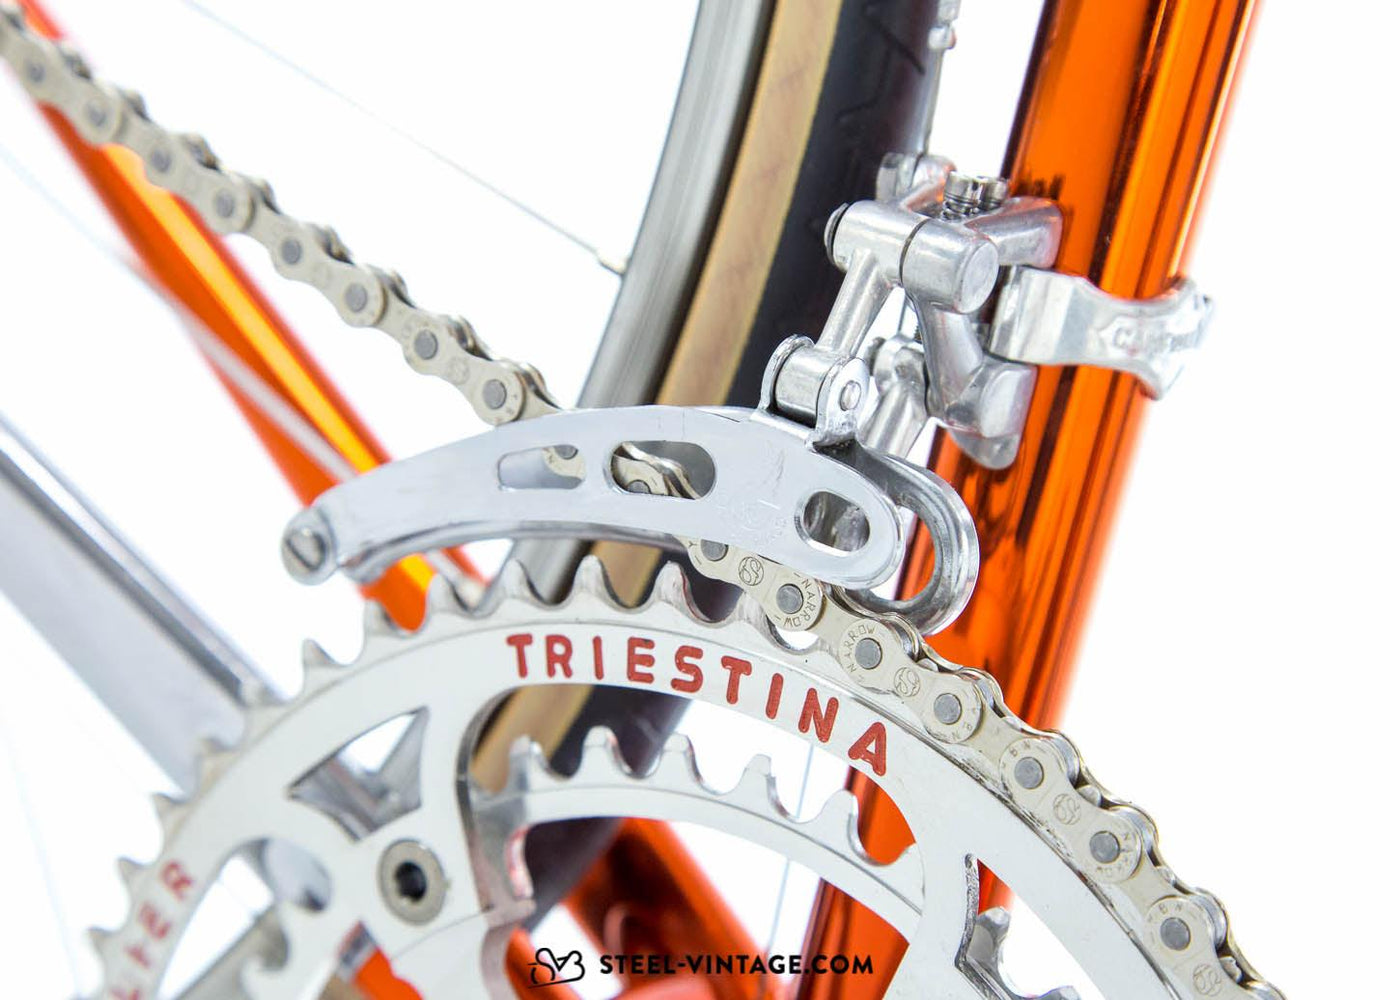 Wilier Triestina Superleggera Ramata 1981 - Steel Vintage Bikes